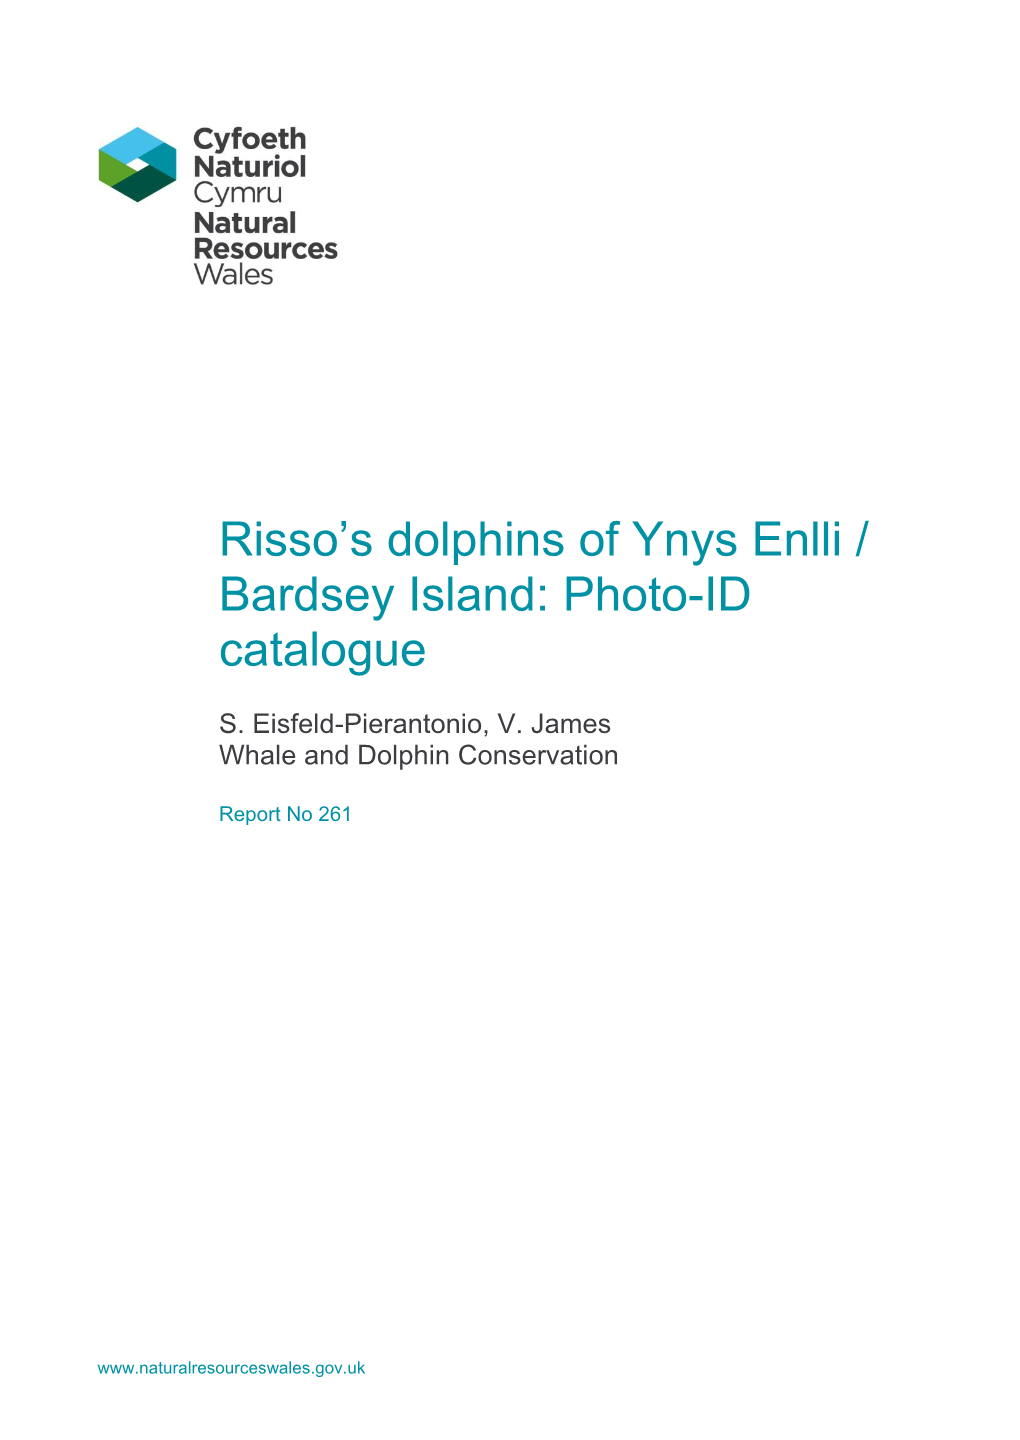 Risso's Dolphins of Ynys Enlli / Bardsey Island